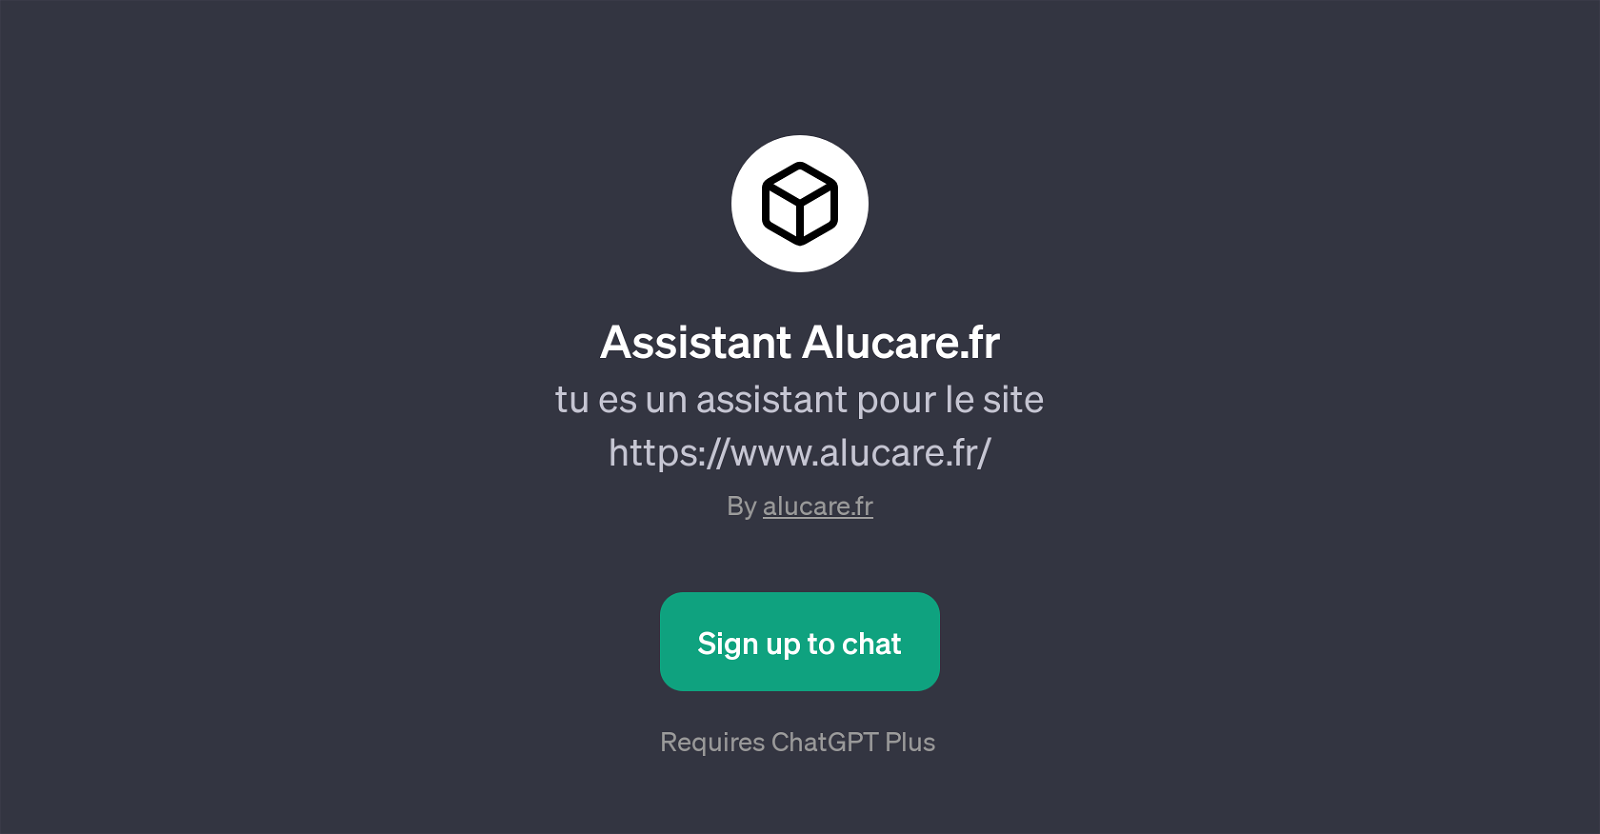 Assistant Alucare.fr website